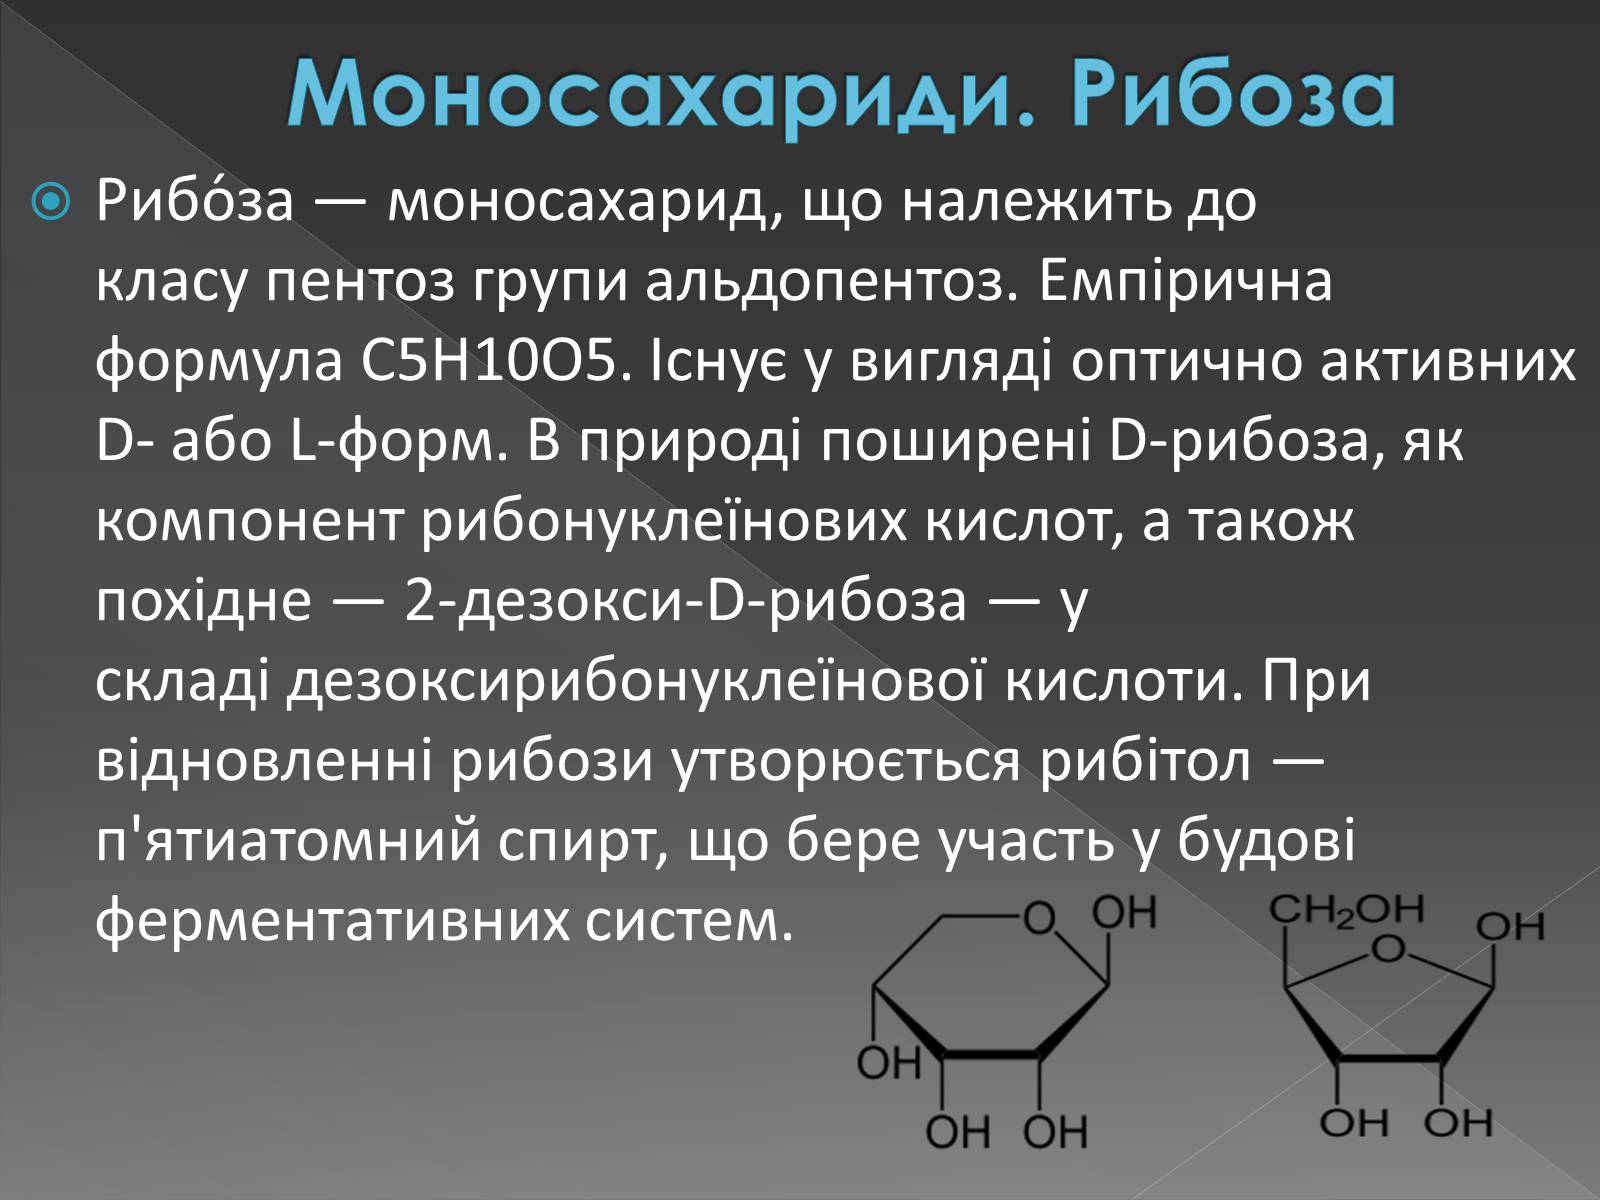 Рибоза биологическая роль. Рибоза строение и функции. Моносахариды рибоза. Рибоза нахождение в природе. Рибоза химия.